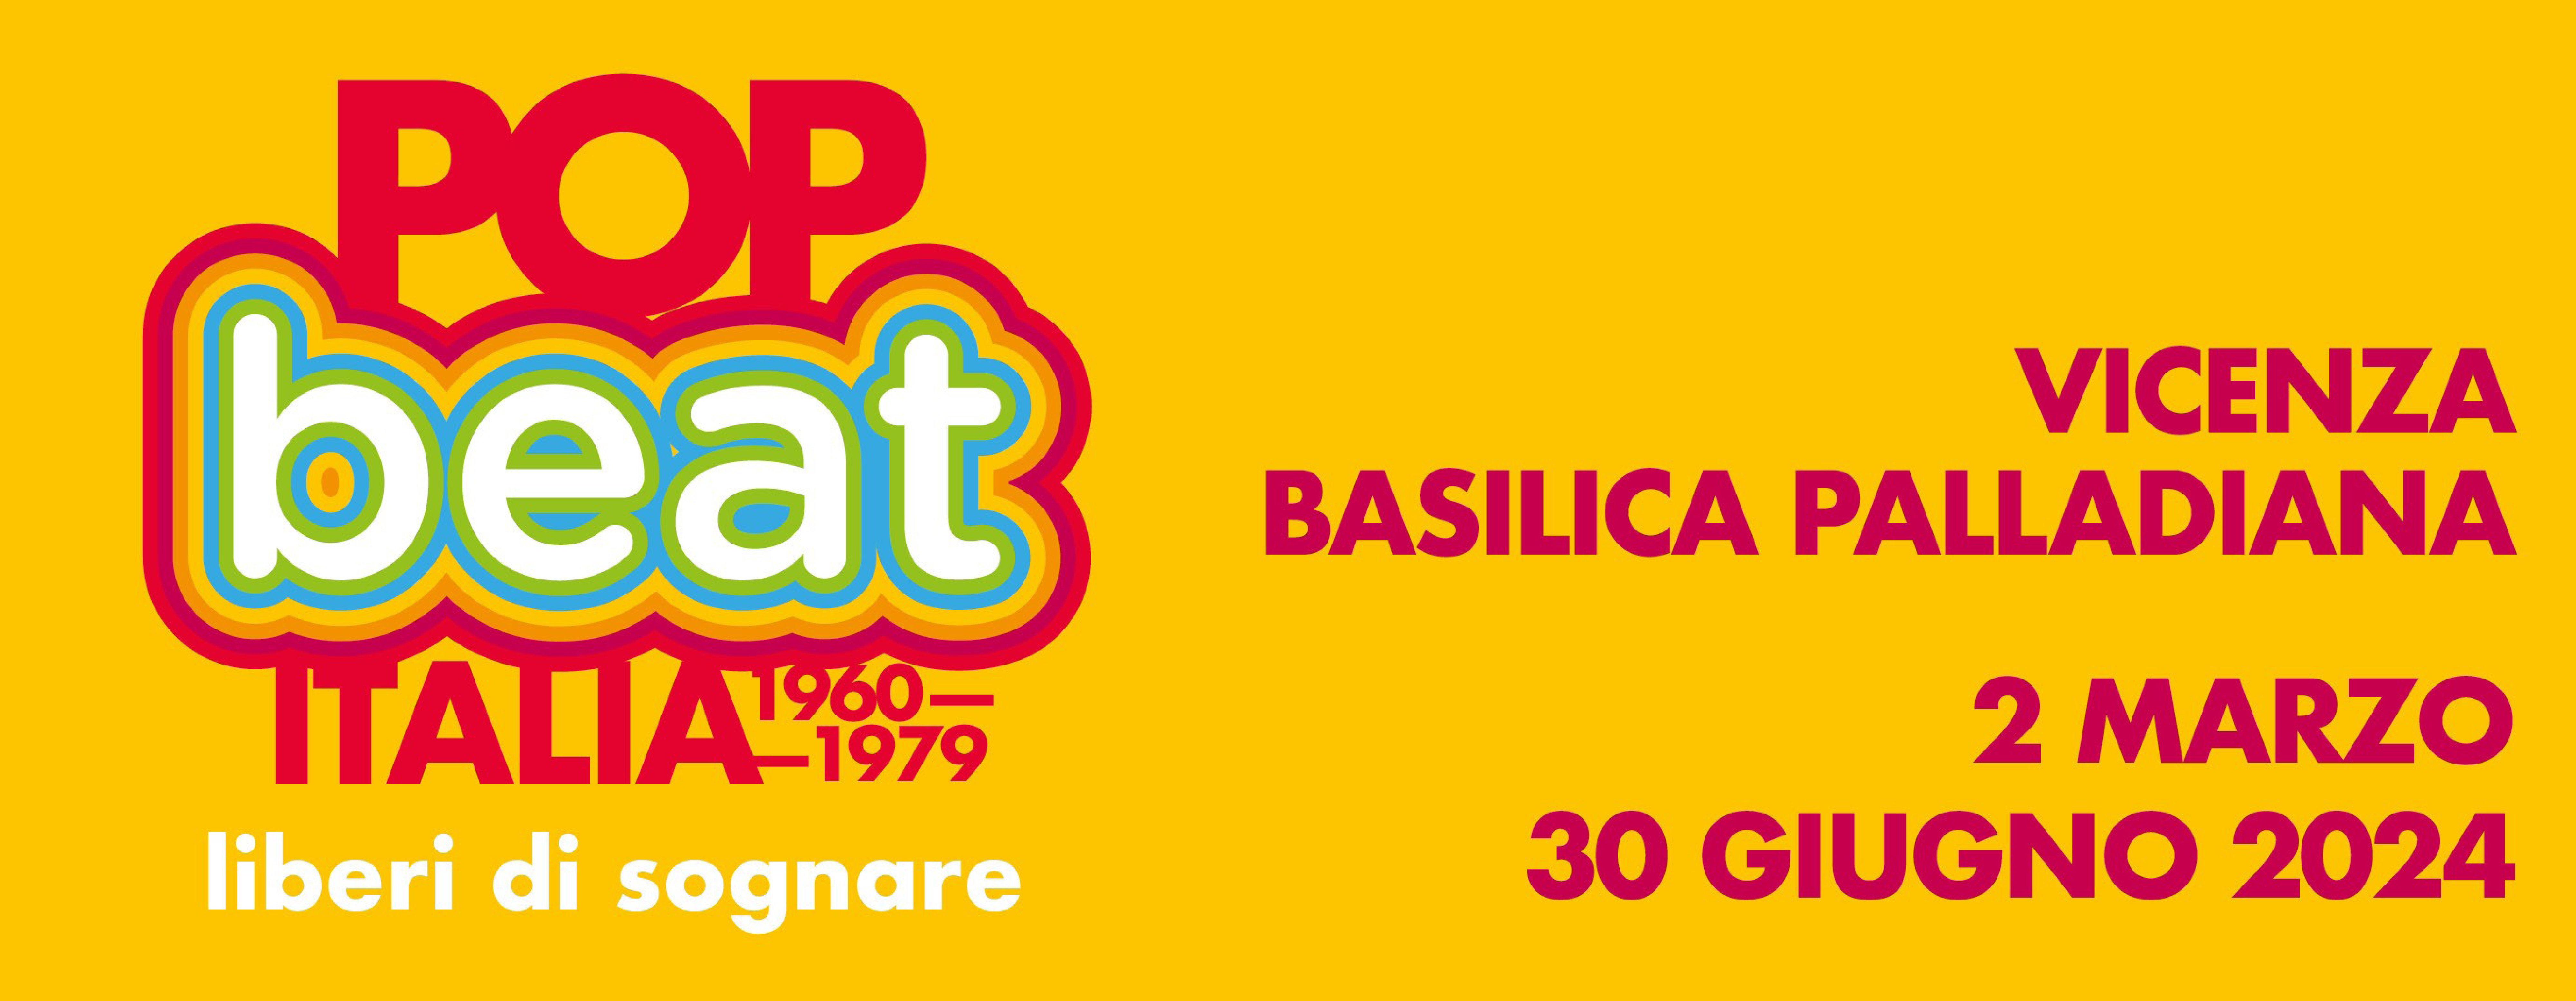 Pop / Beat. Italia 1960 - 1979